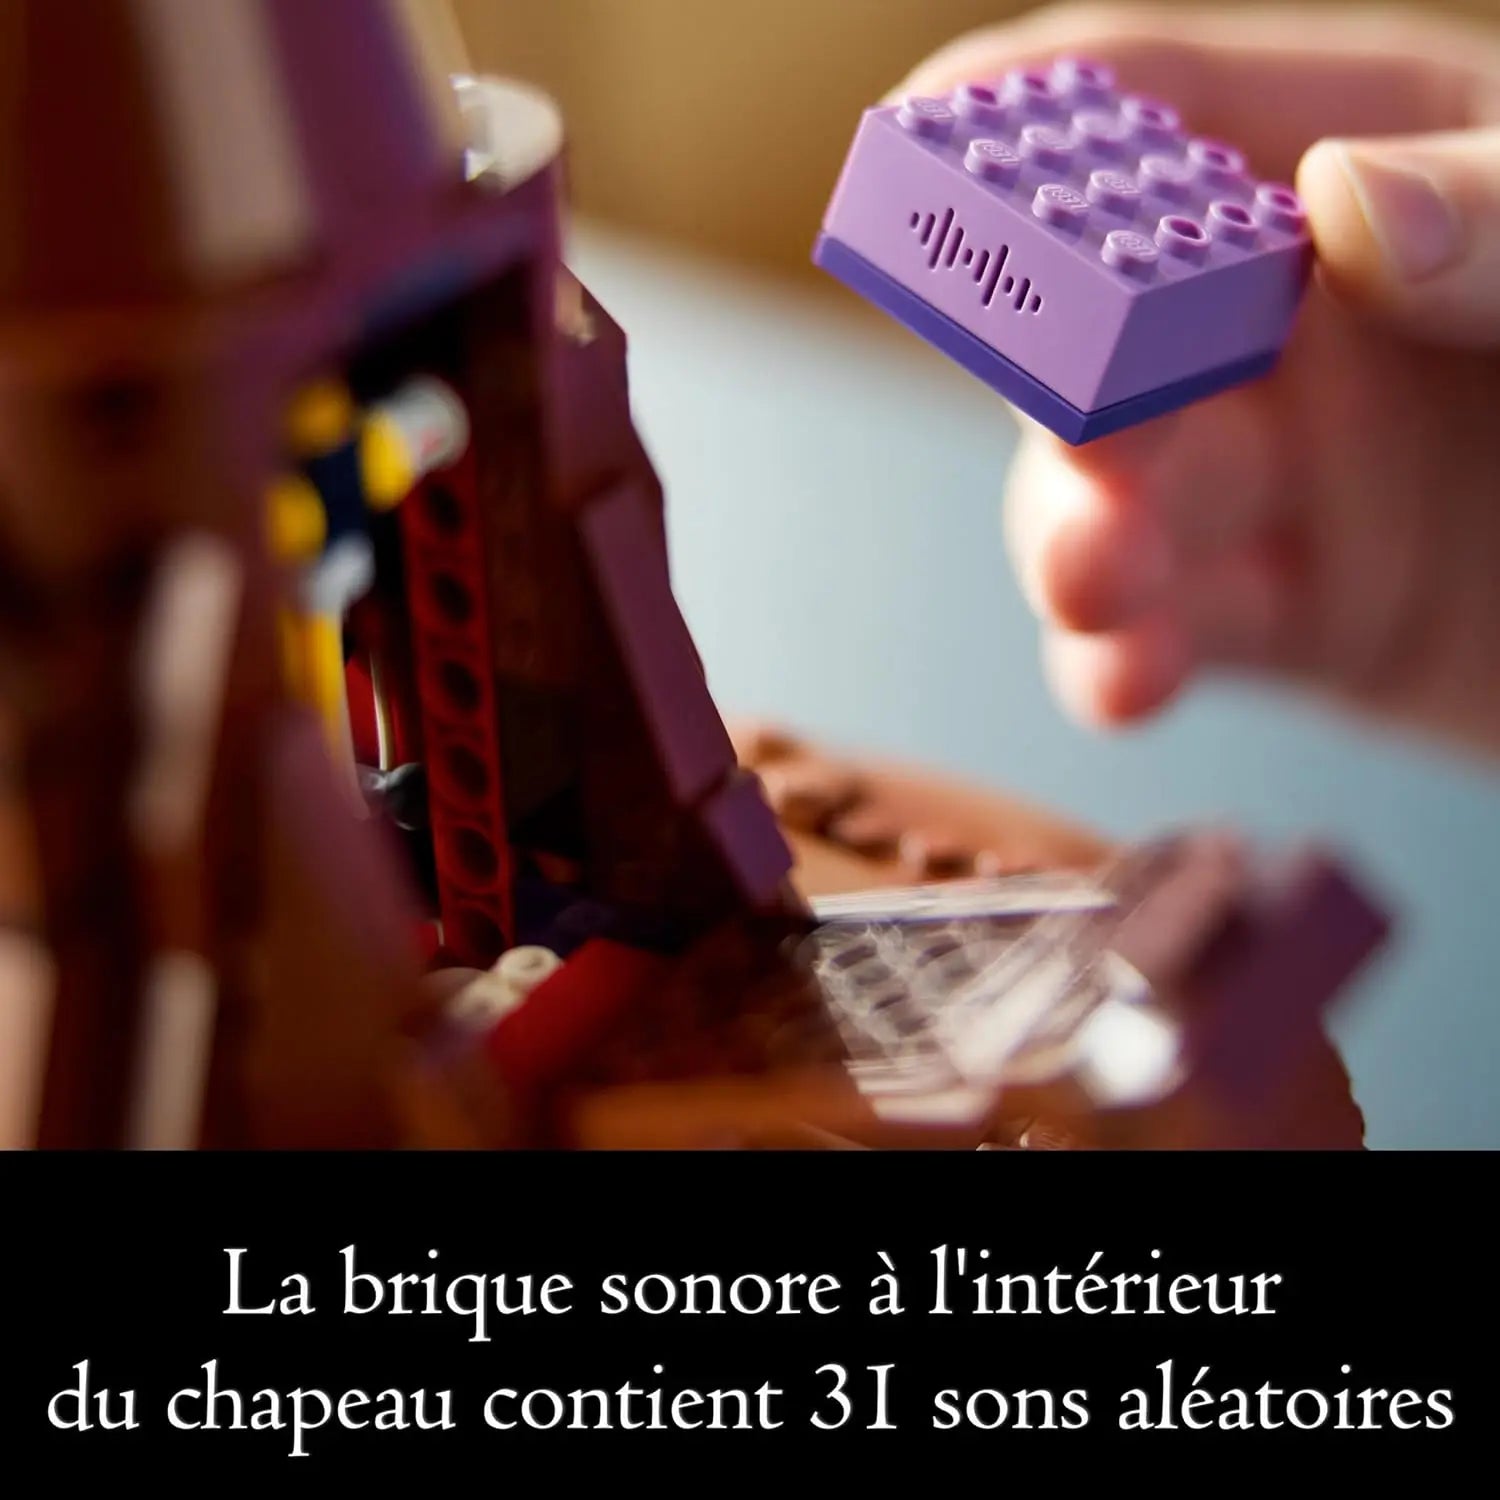 lego 76429 LEGO Harry Potter Le Choixpeau Magique qui Parle LEGO